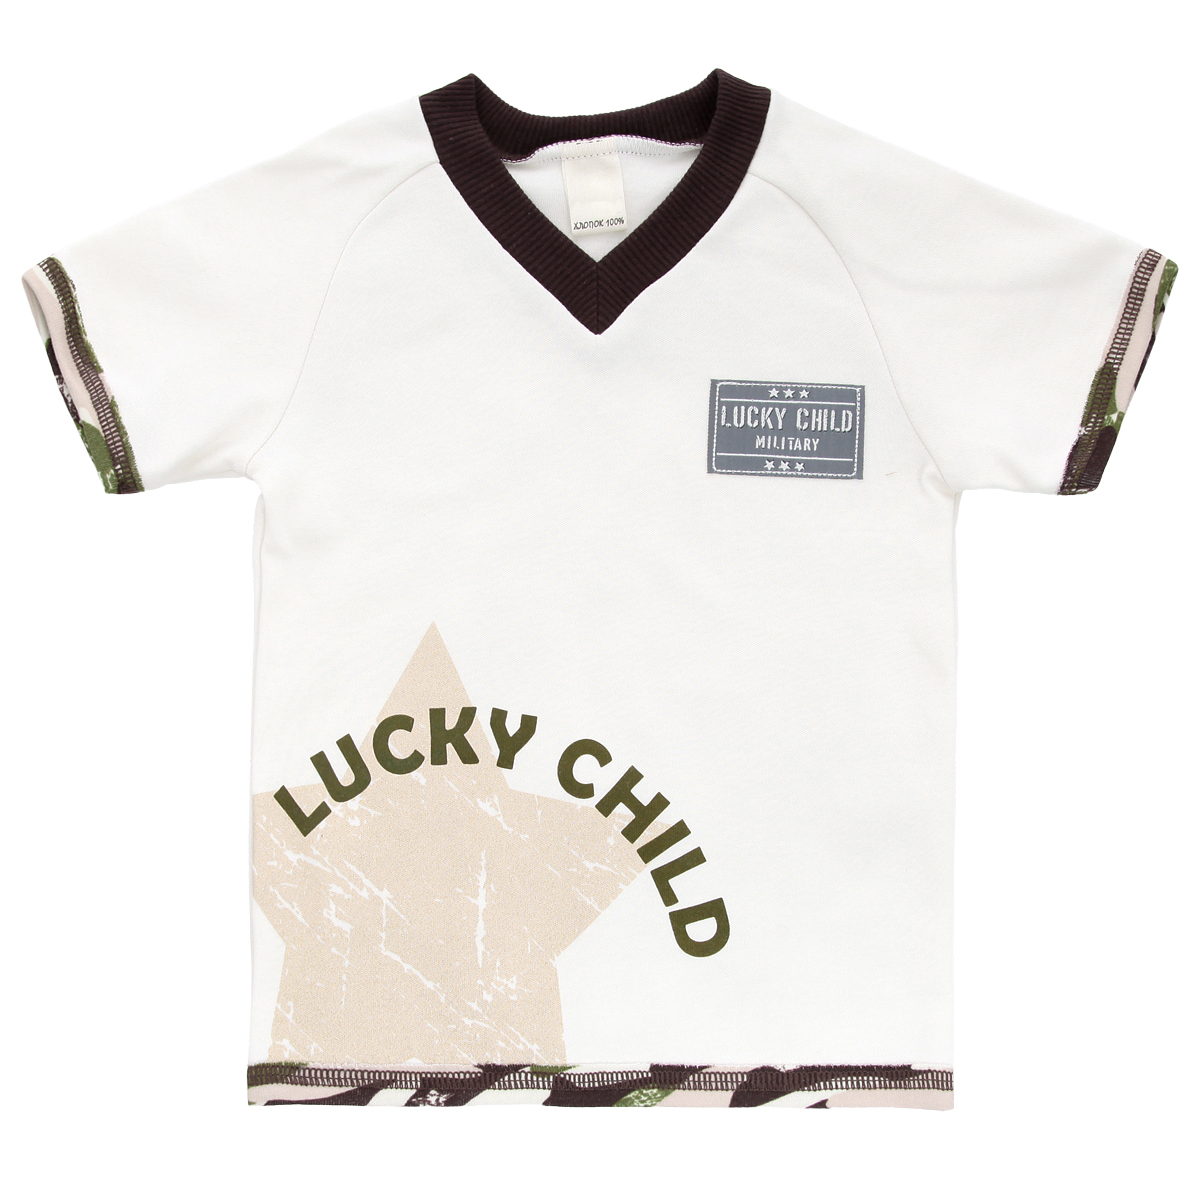 Футболка для мальчика Lucky Child Вежливые люди, цвет: светло-бежевый, темно-коричневый, зеленый. 31-262. Размер 92/98